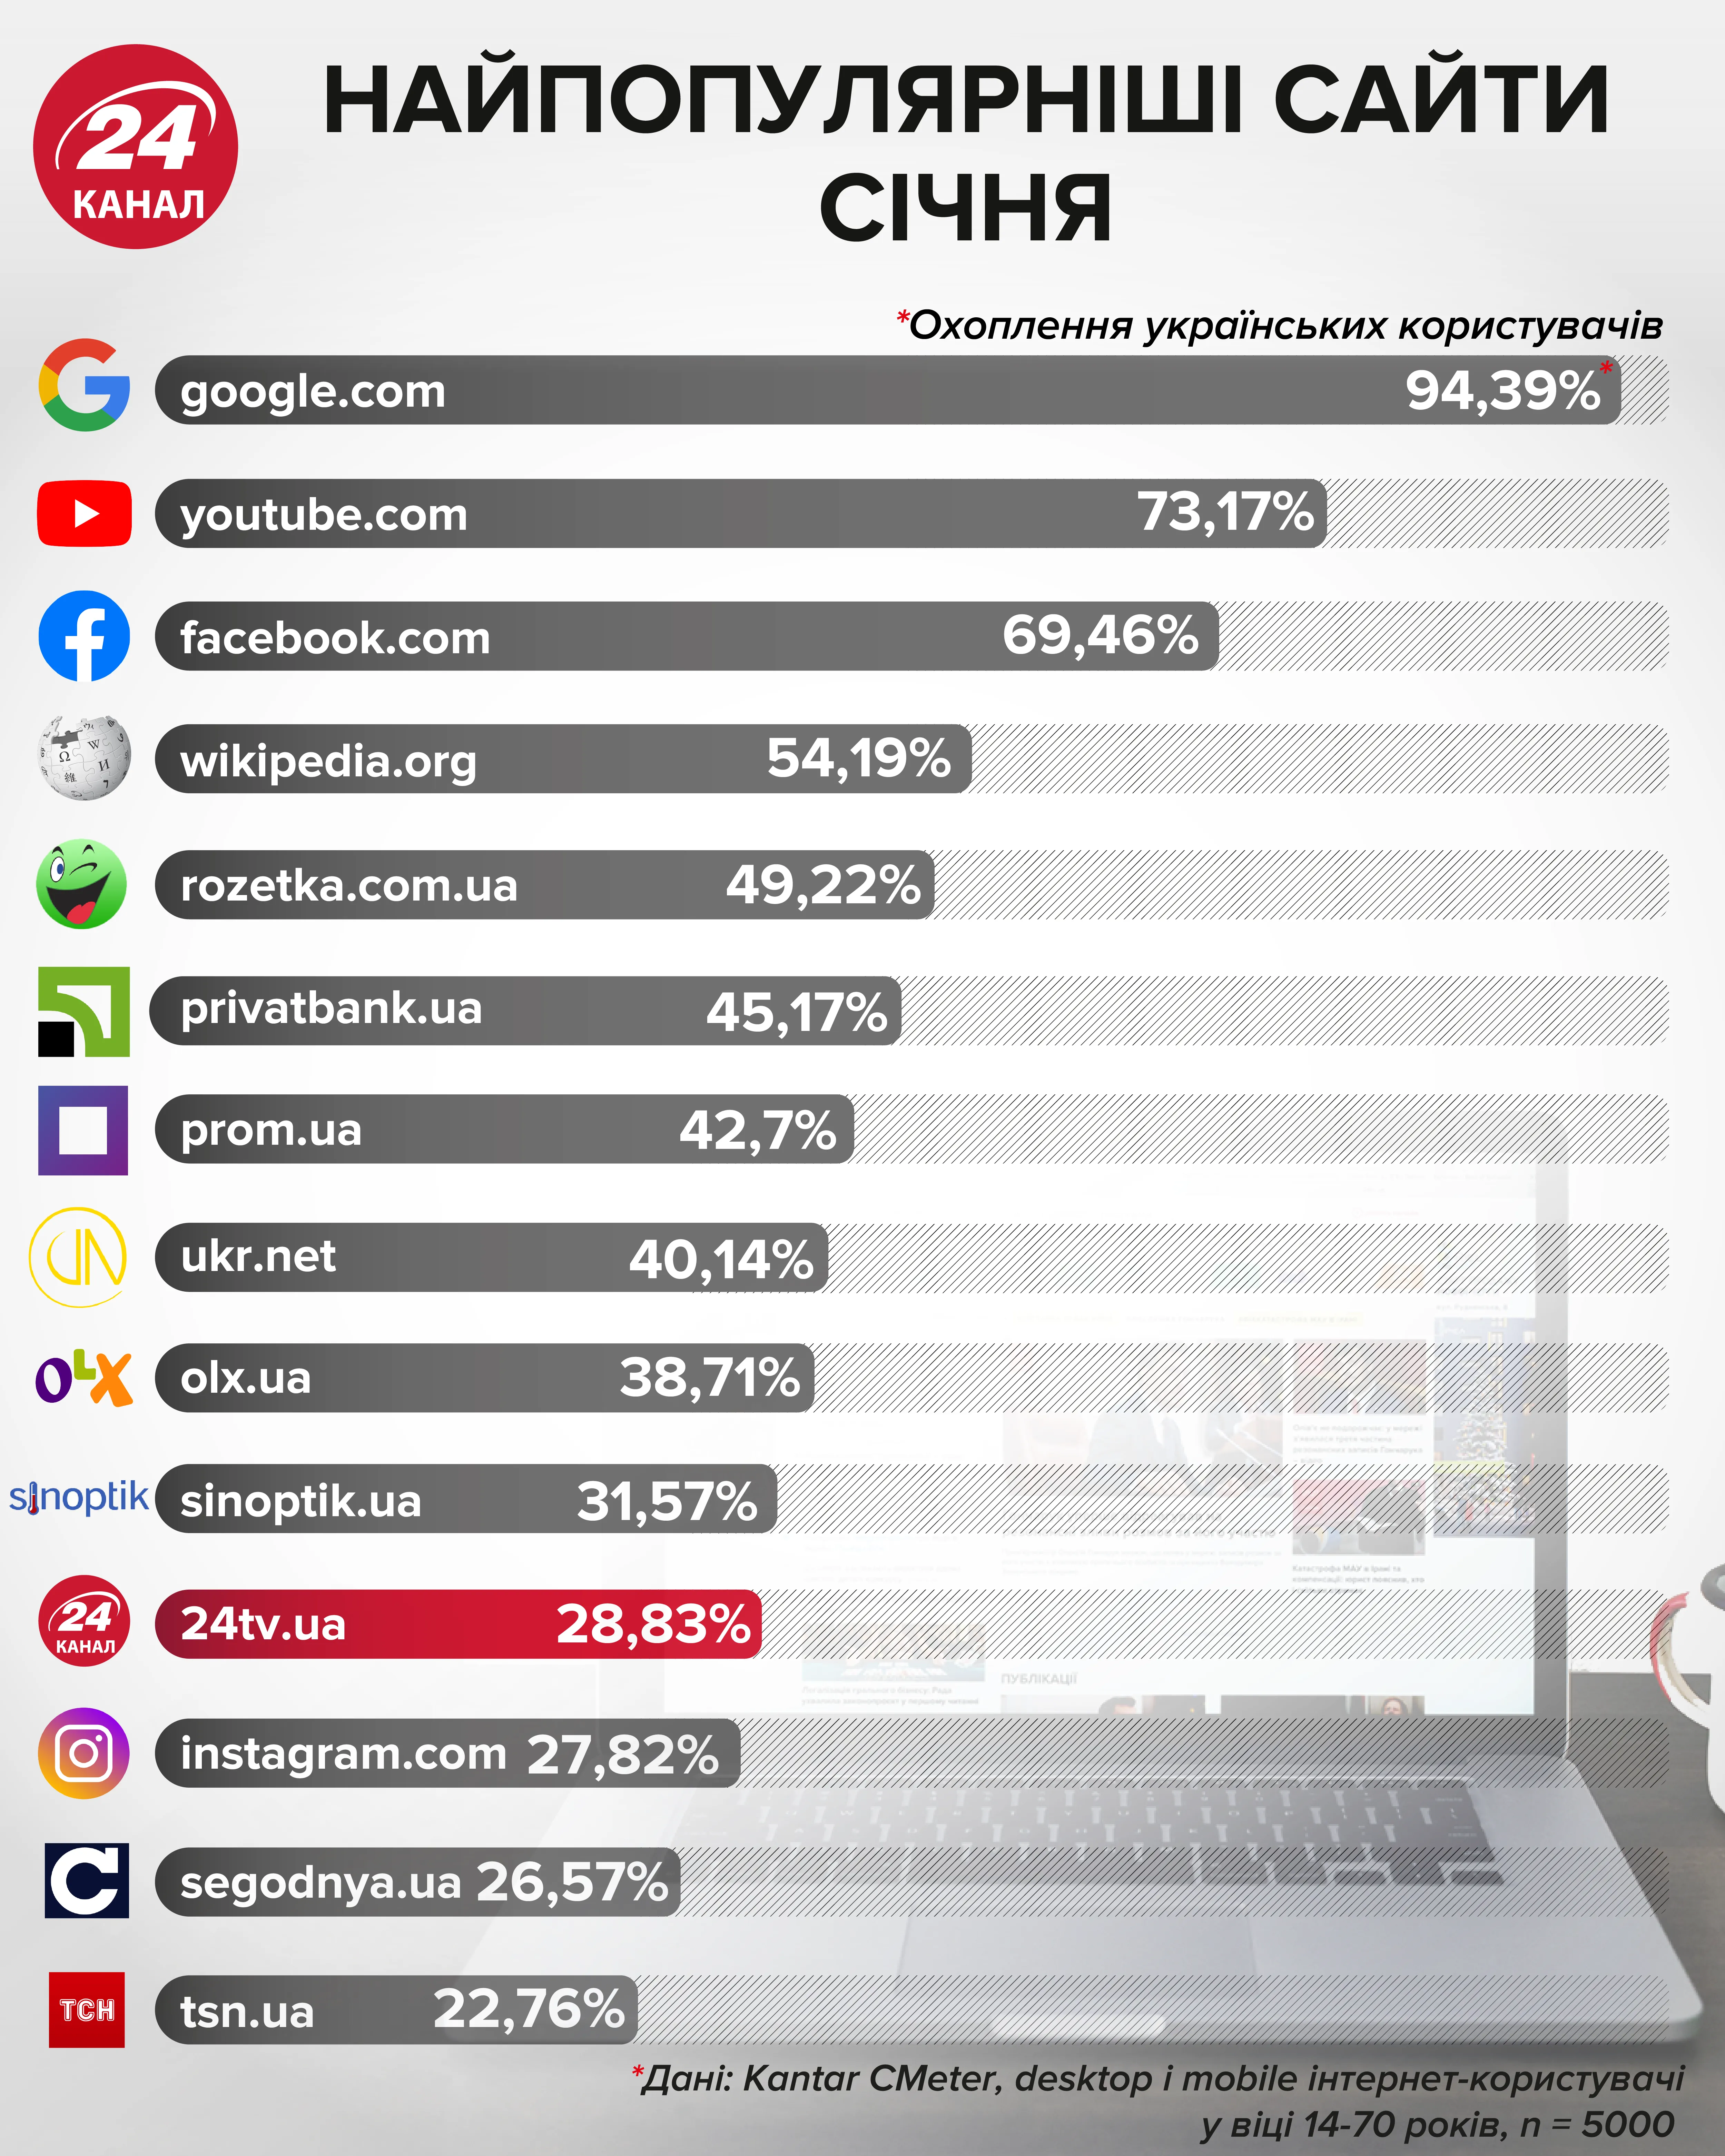 Найпопулярніші сайти січня